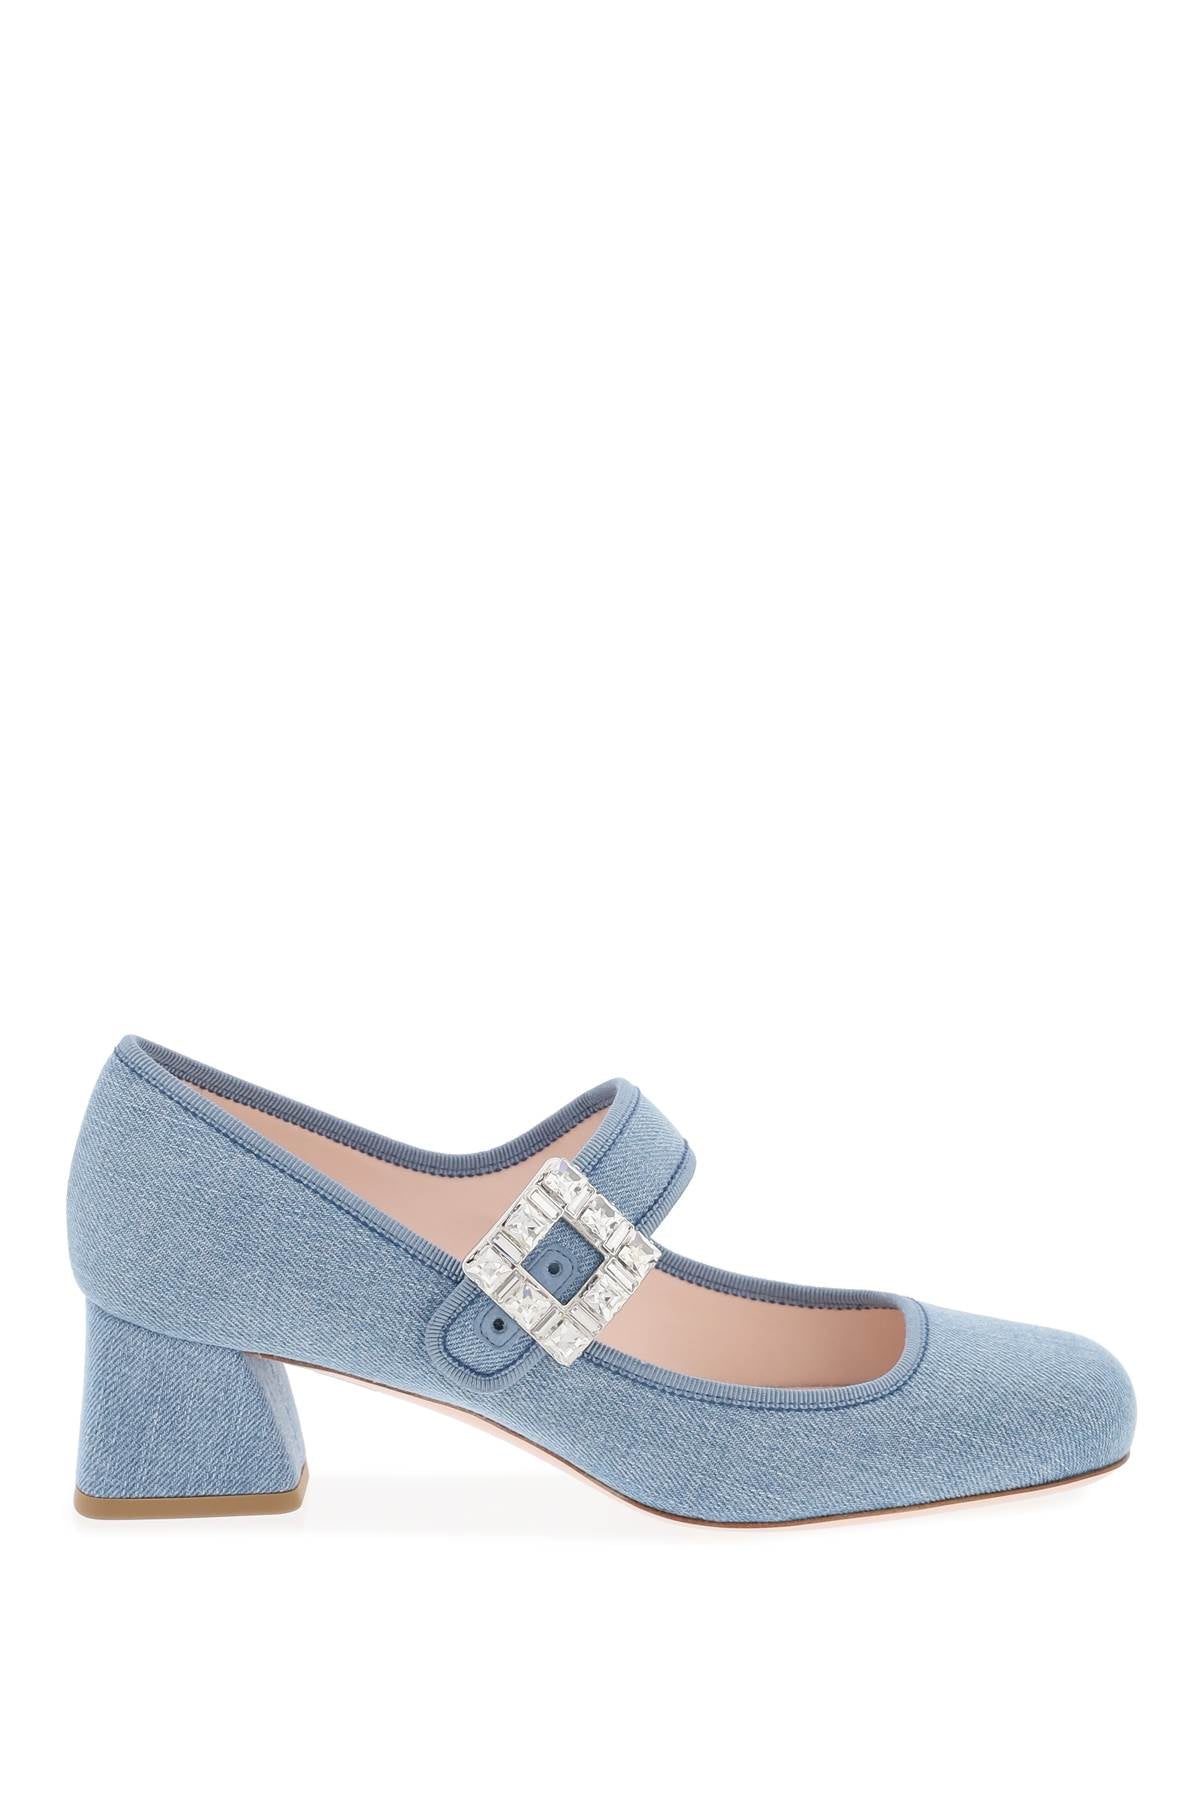 蓝色牛仔布製法式高跟鞋女士平底鞋